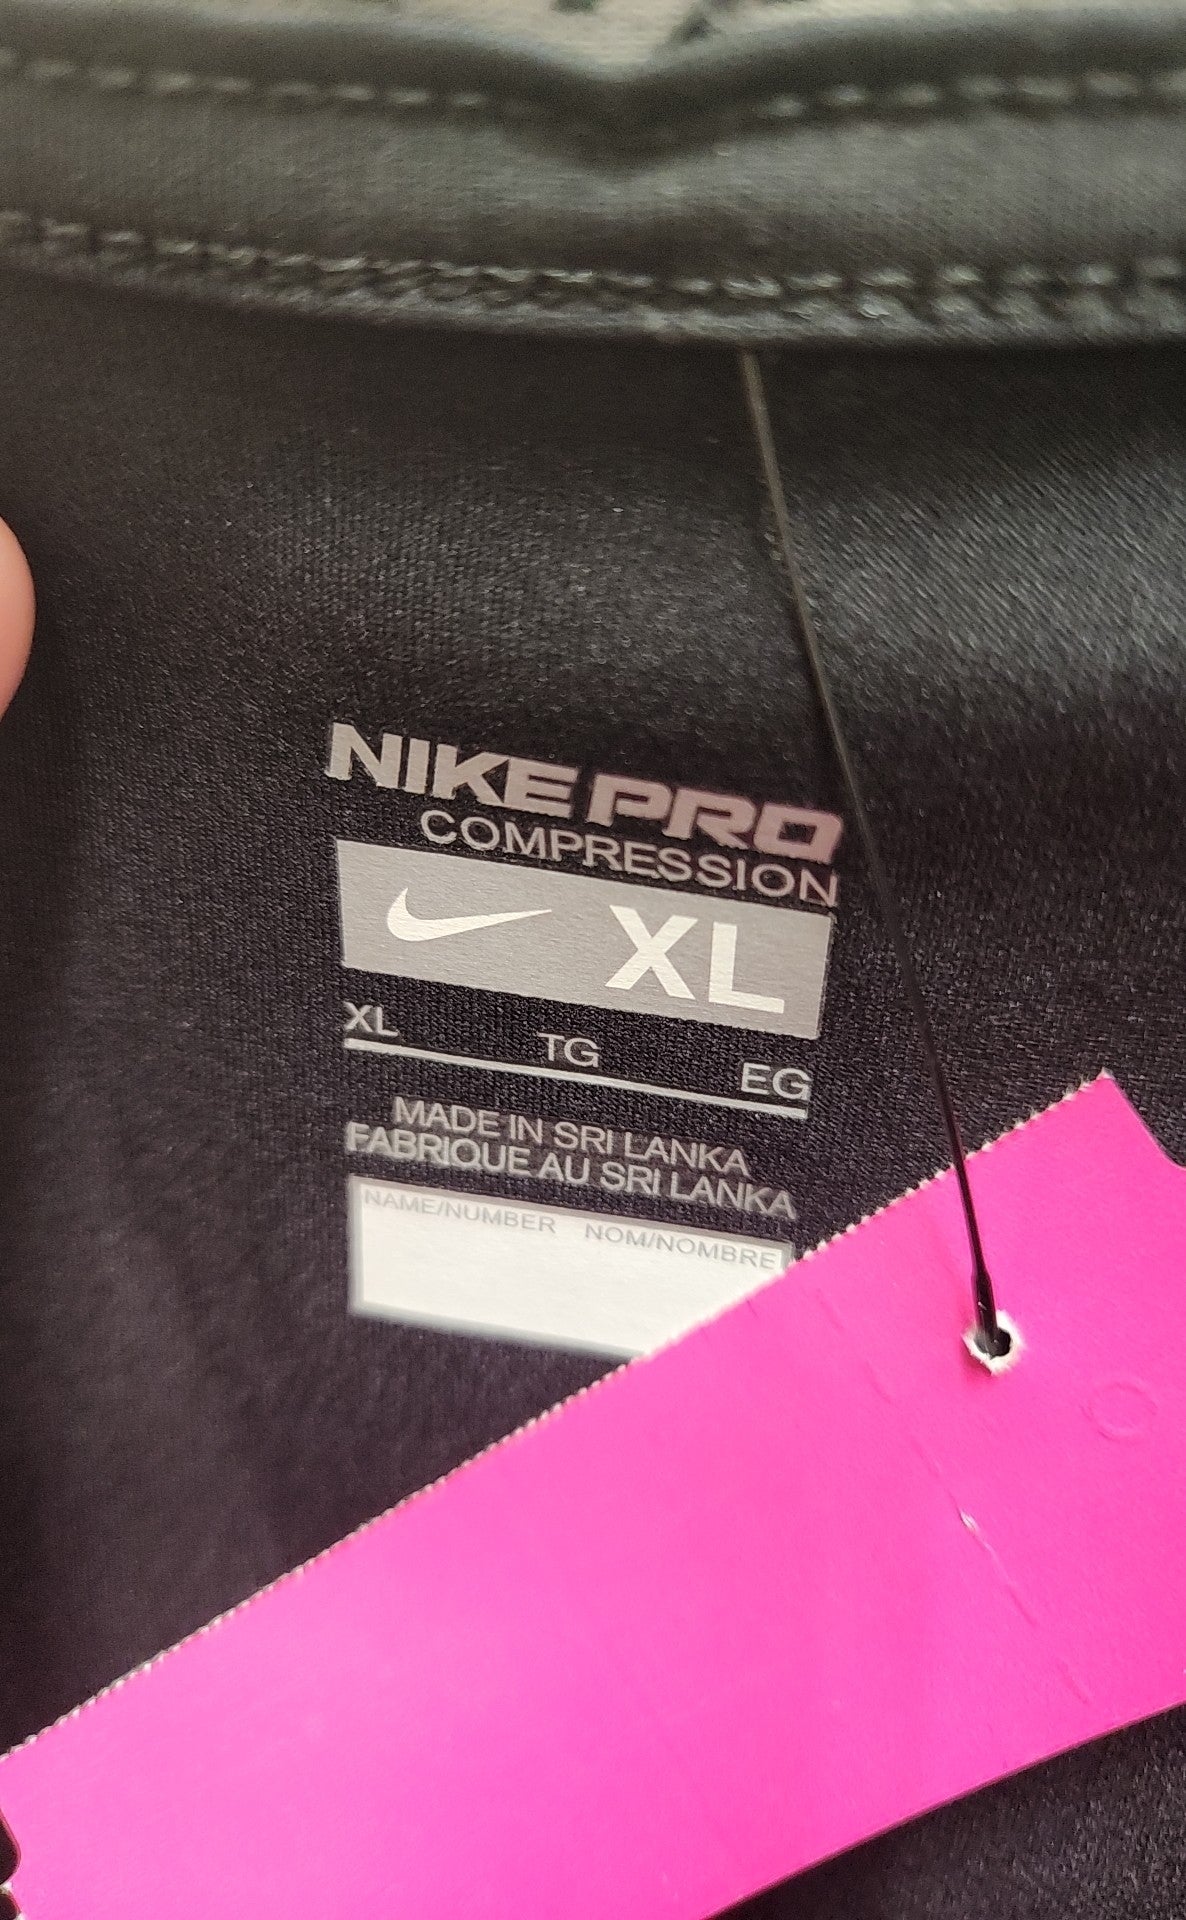 Nike Men's Size XL Black Shirt